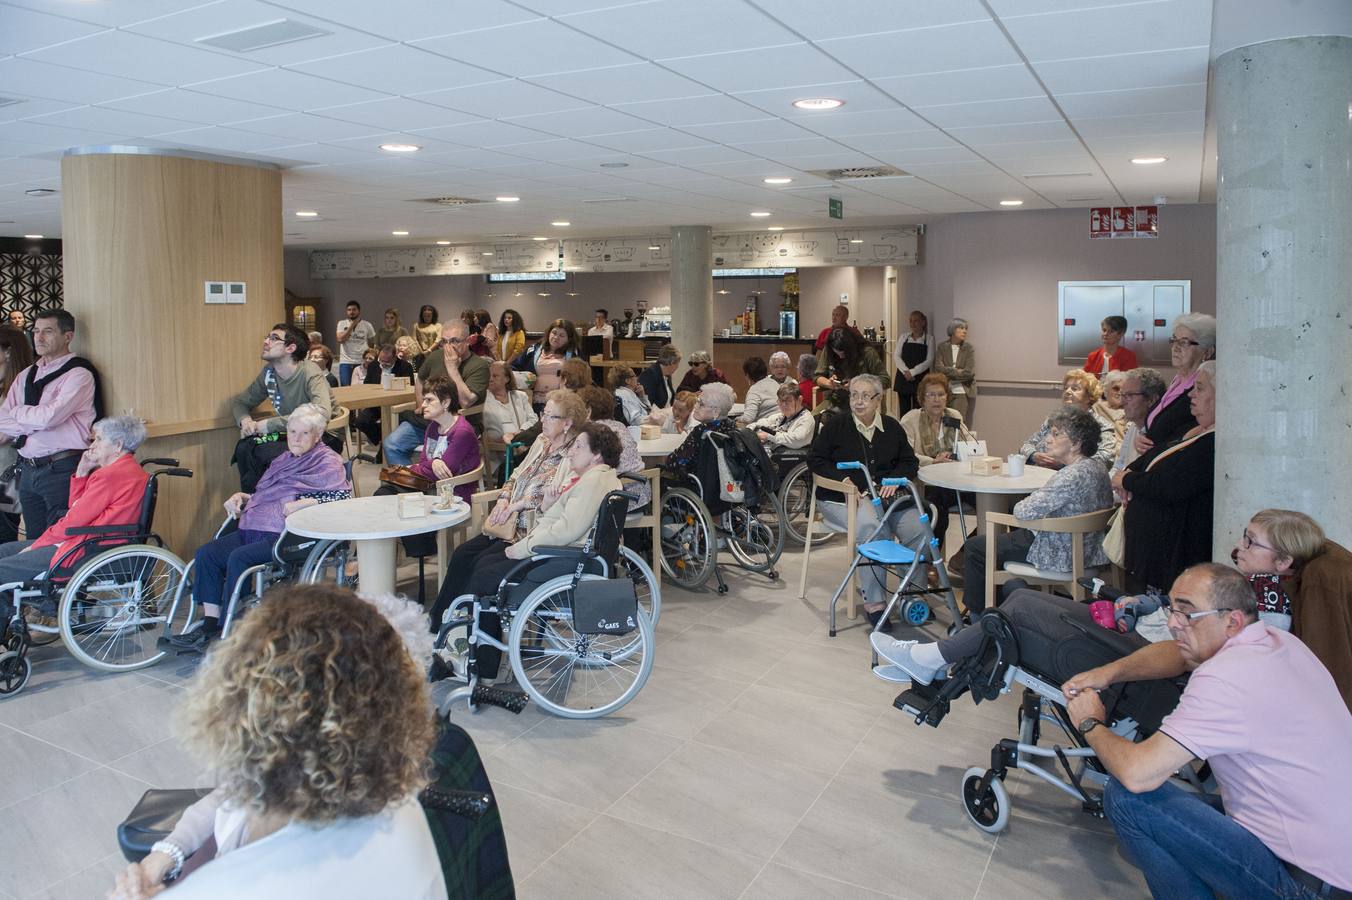 El centro para residentes de avanzada edad amplía sus instalaciones y moderniza su atención geriátrica. Una herencia ha financiado el proyecto